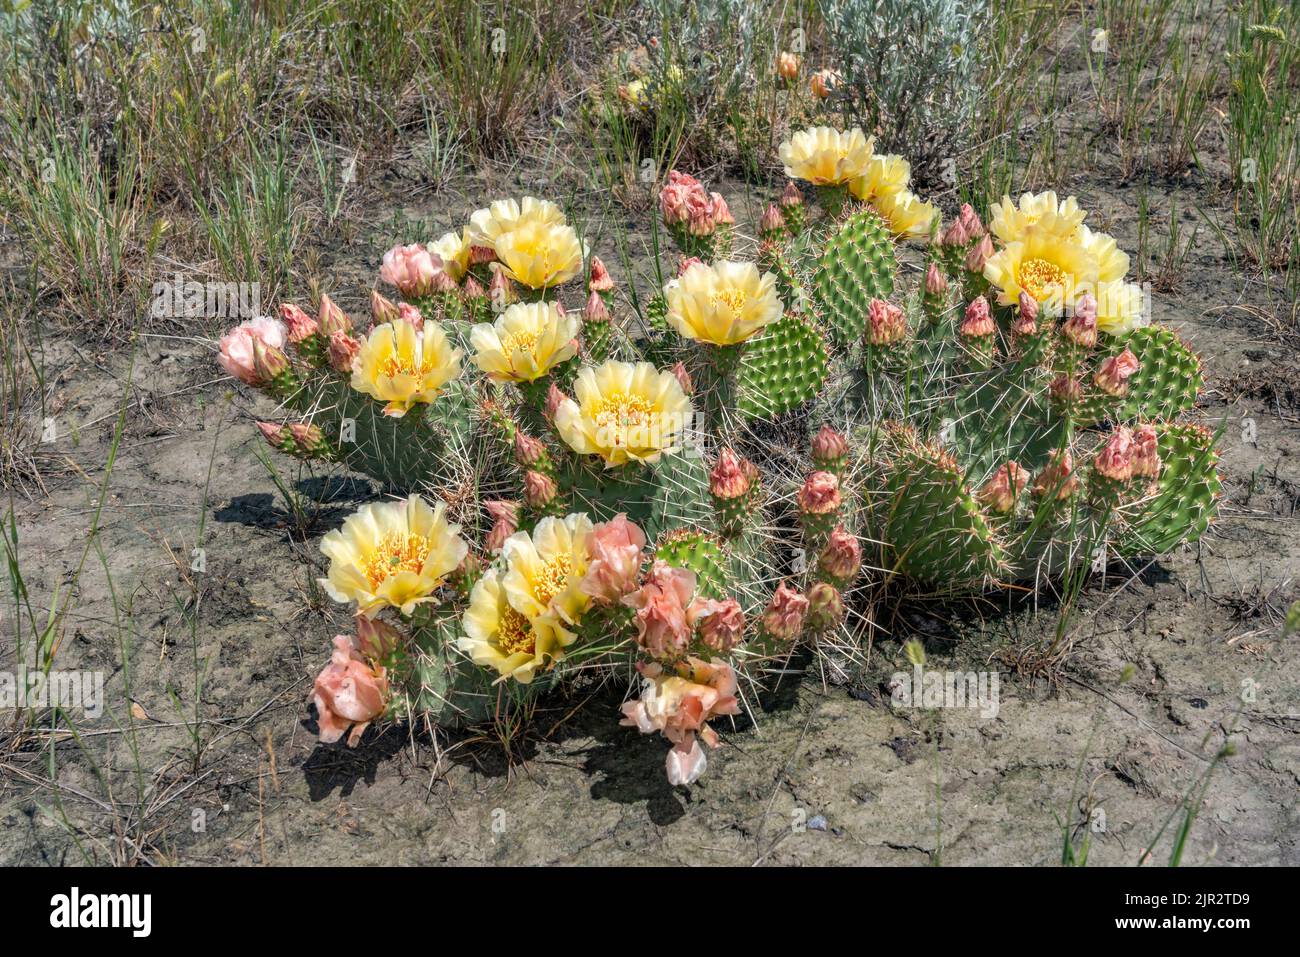 Le cactus à la poire en forme de pirigue fleurit dans le parc national des Prairies, dans le sud de la Saskatchewan, au Canada. Banque D'Images